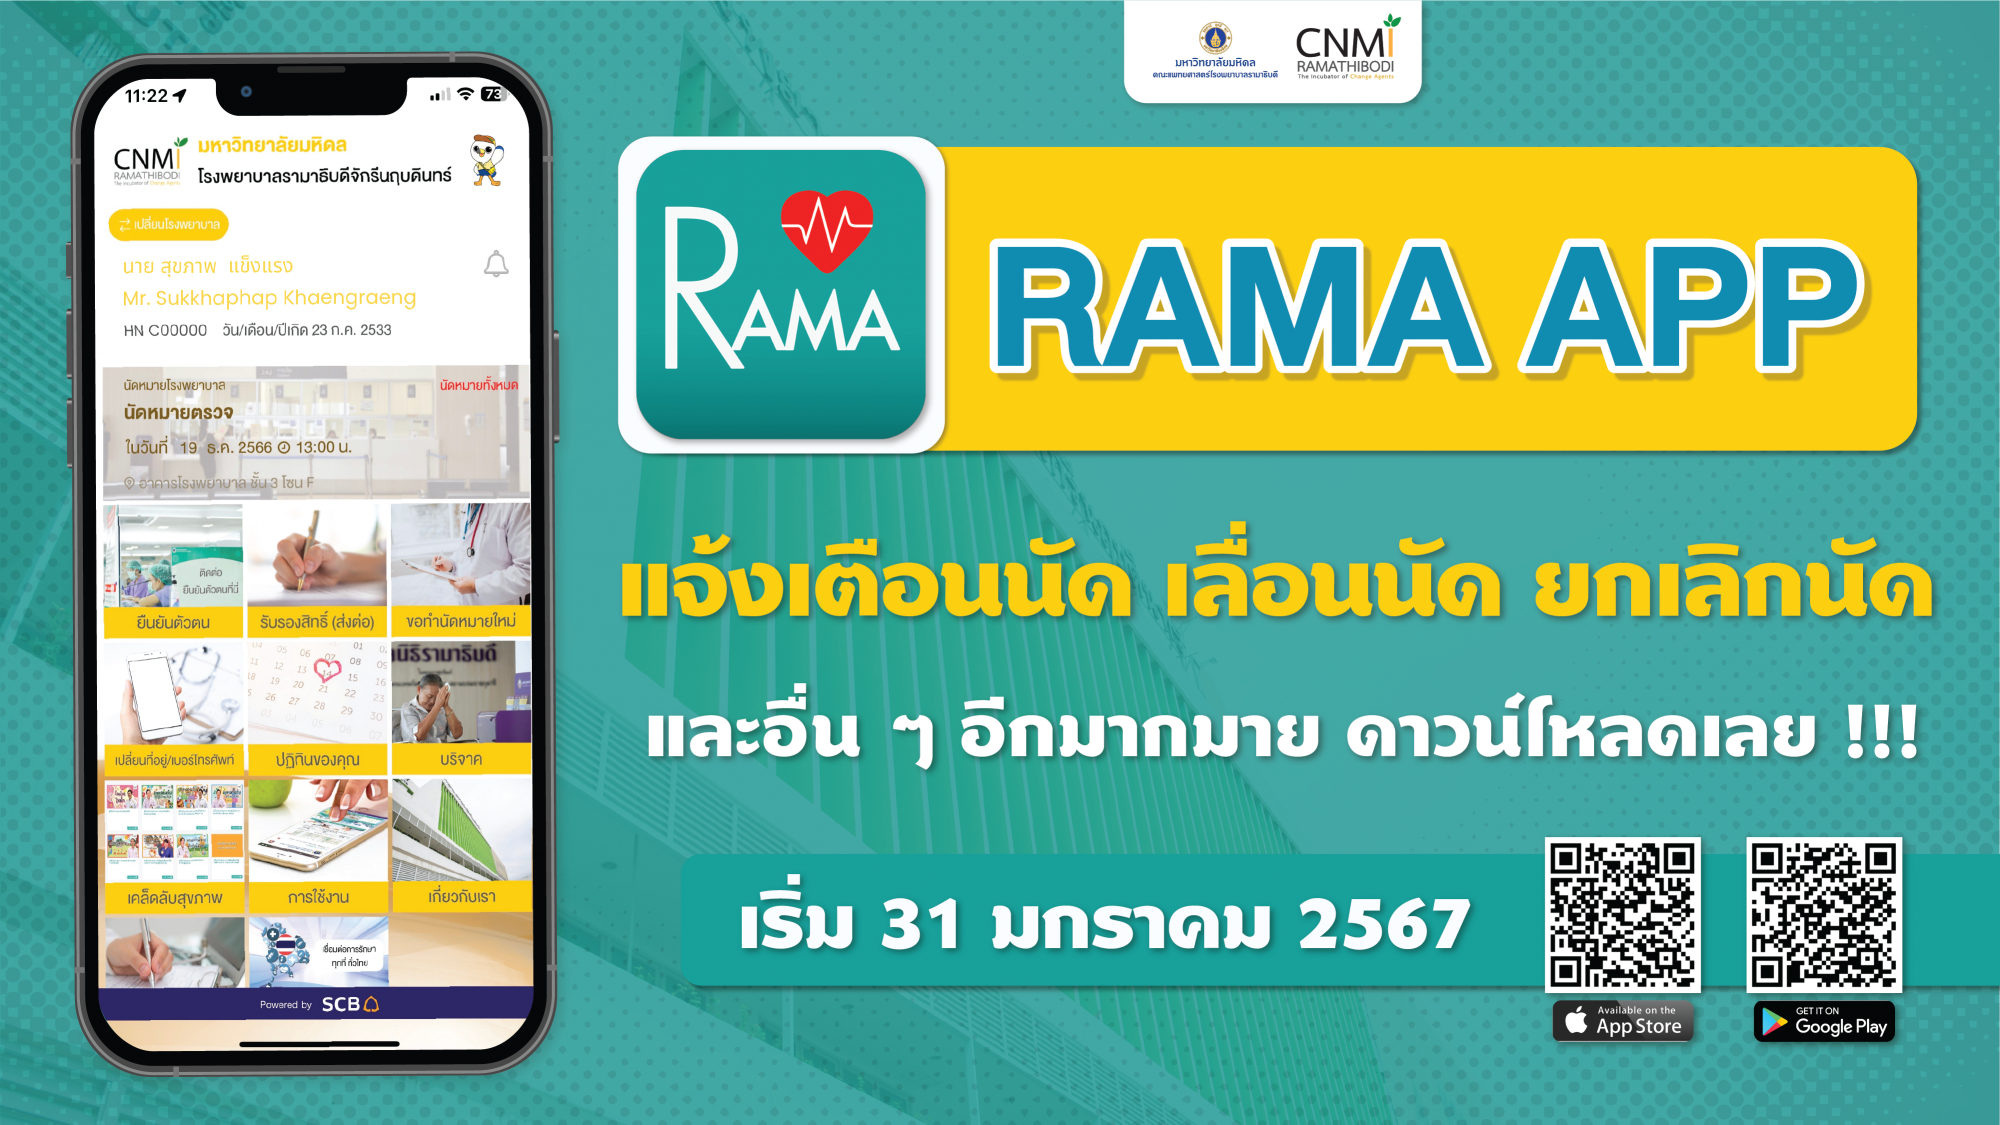 Rama app